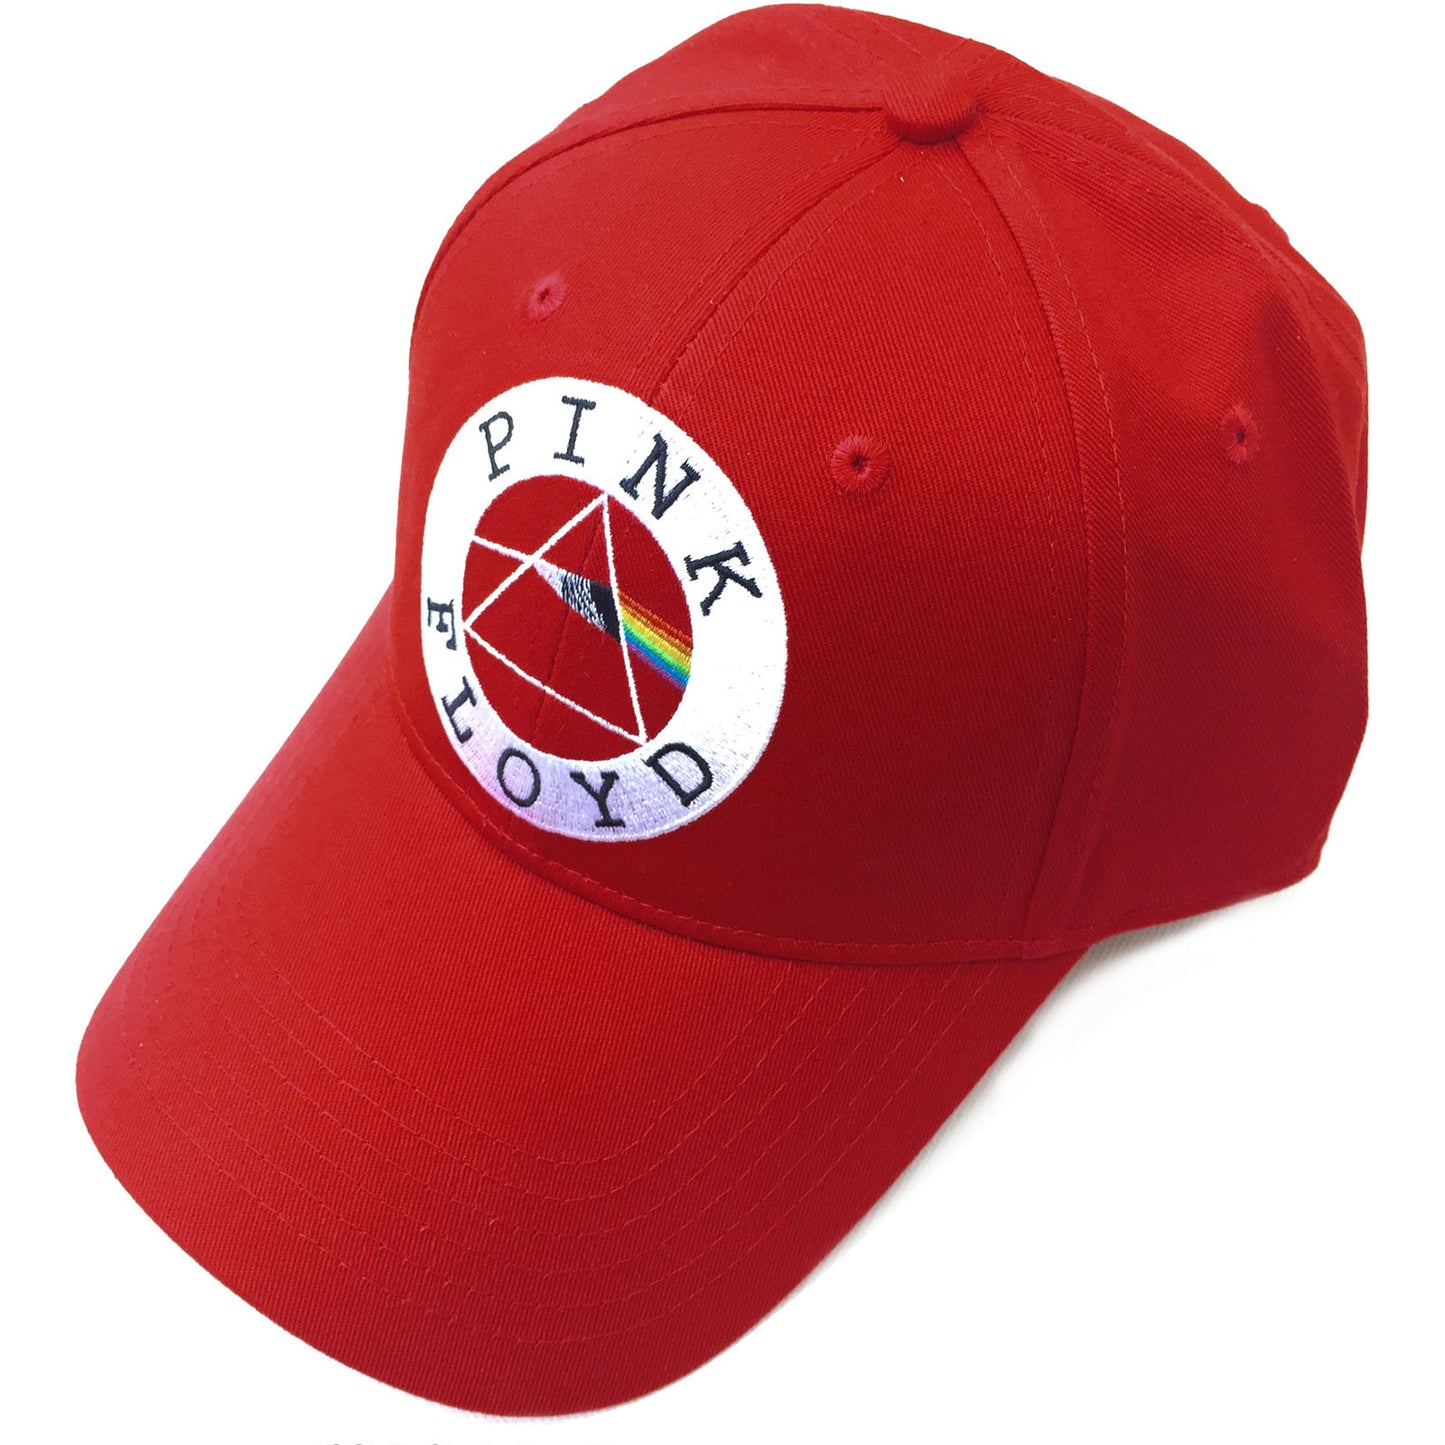 Pink Floyd Baseball Cap: Circle Logo